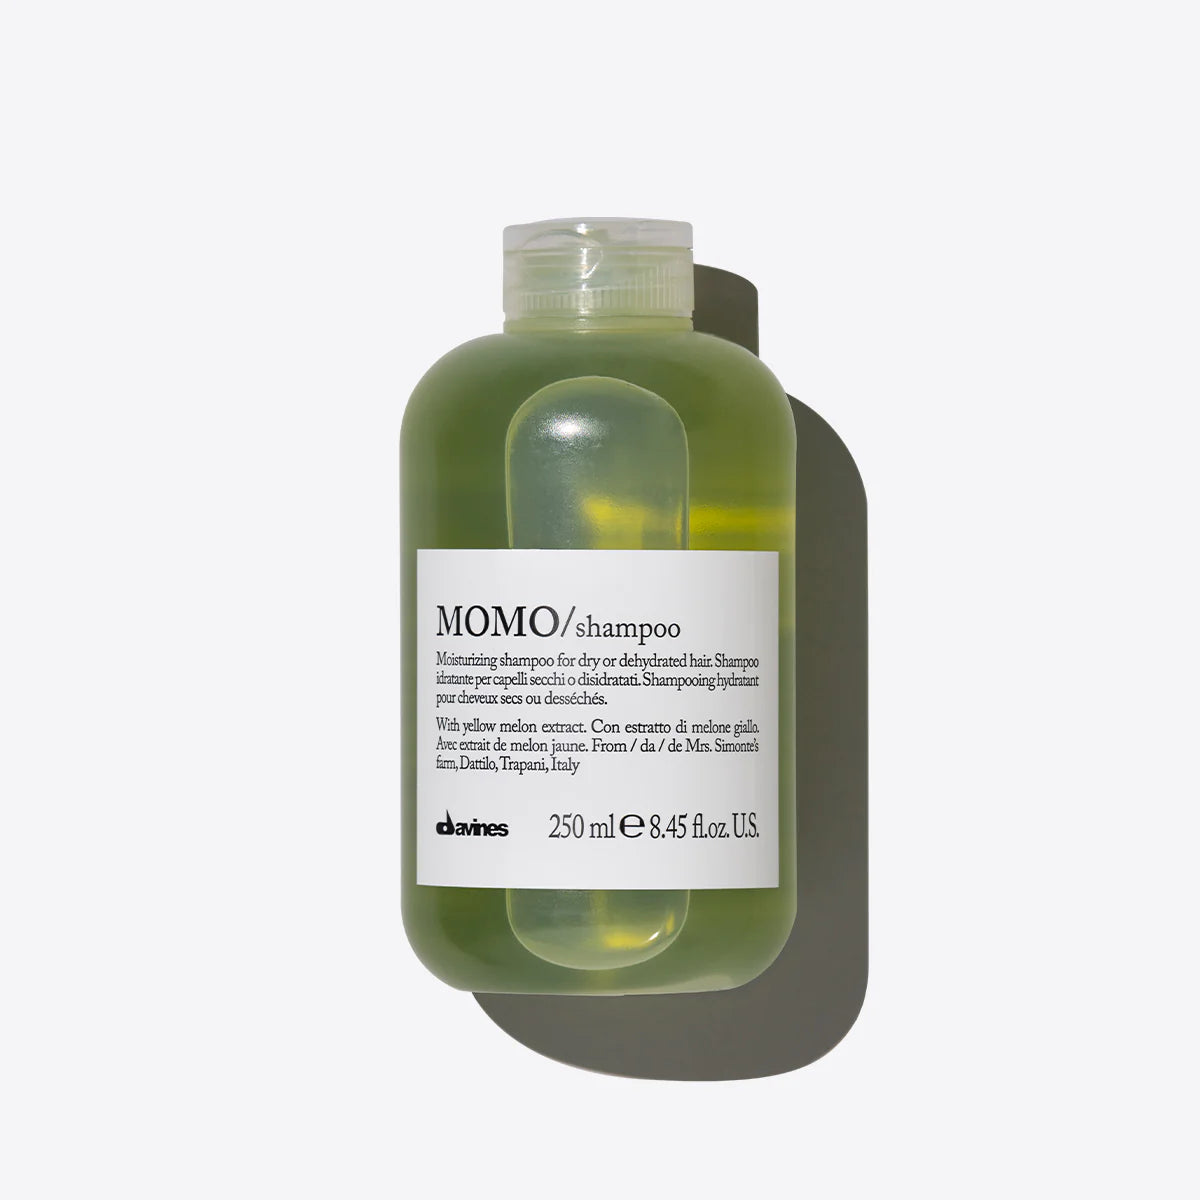 MOMO Shampoo 75ml - Travel